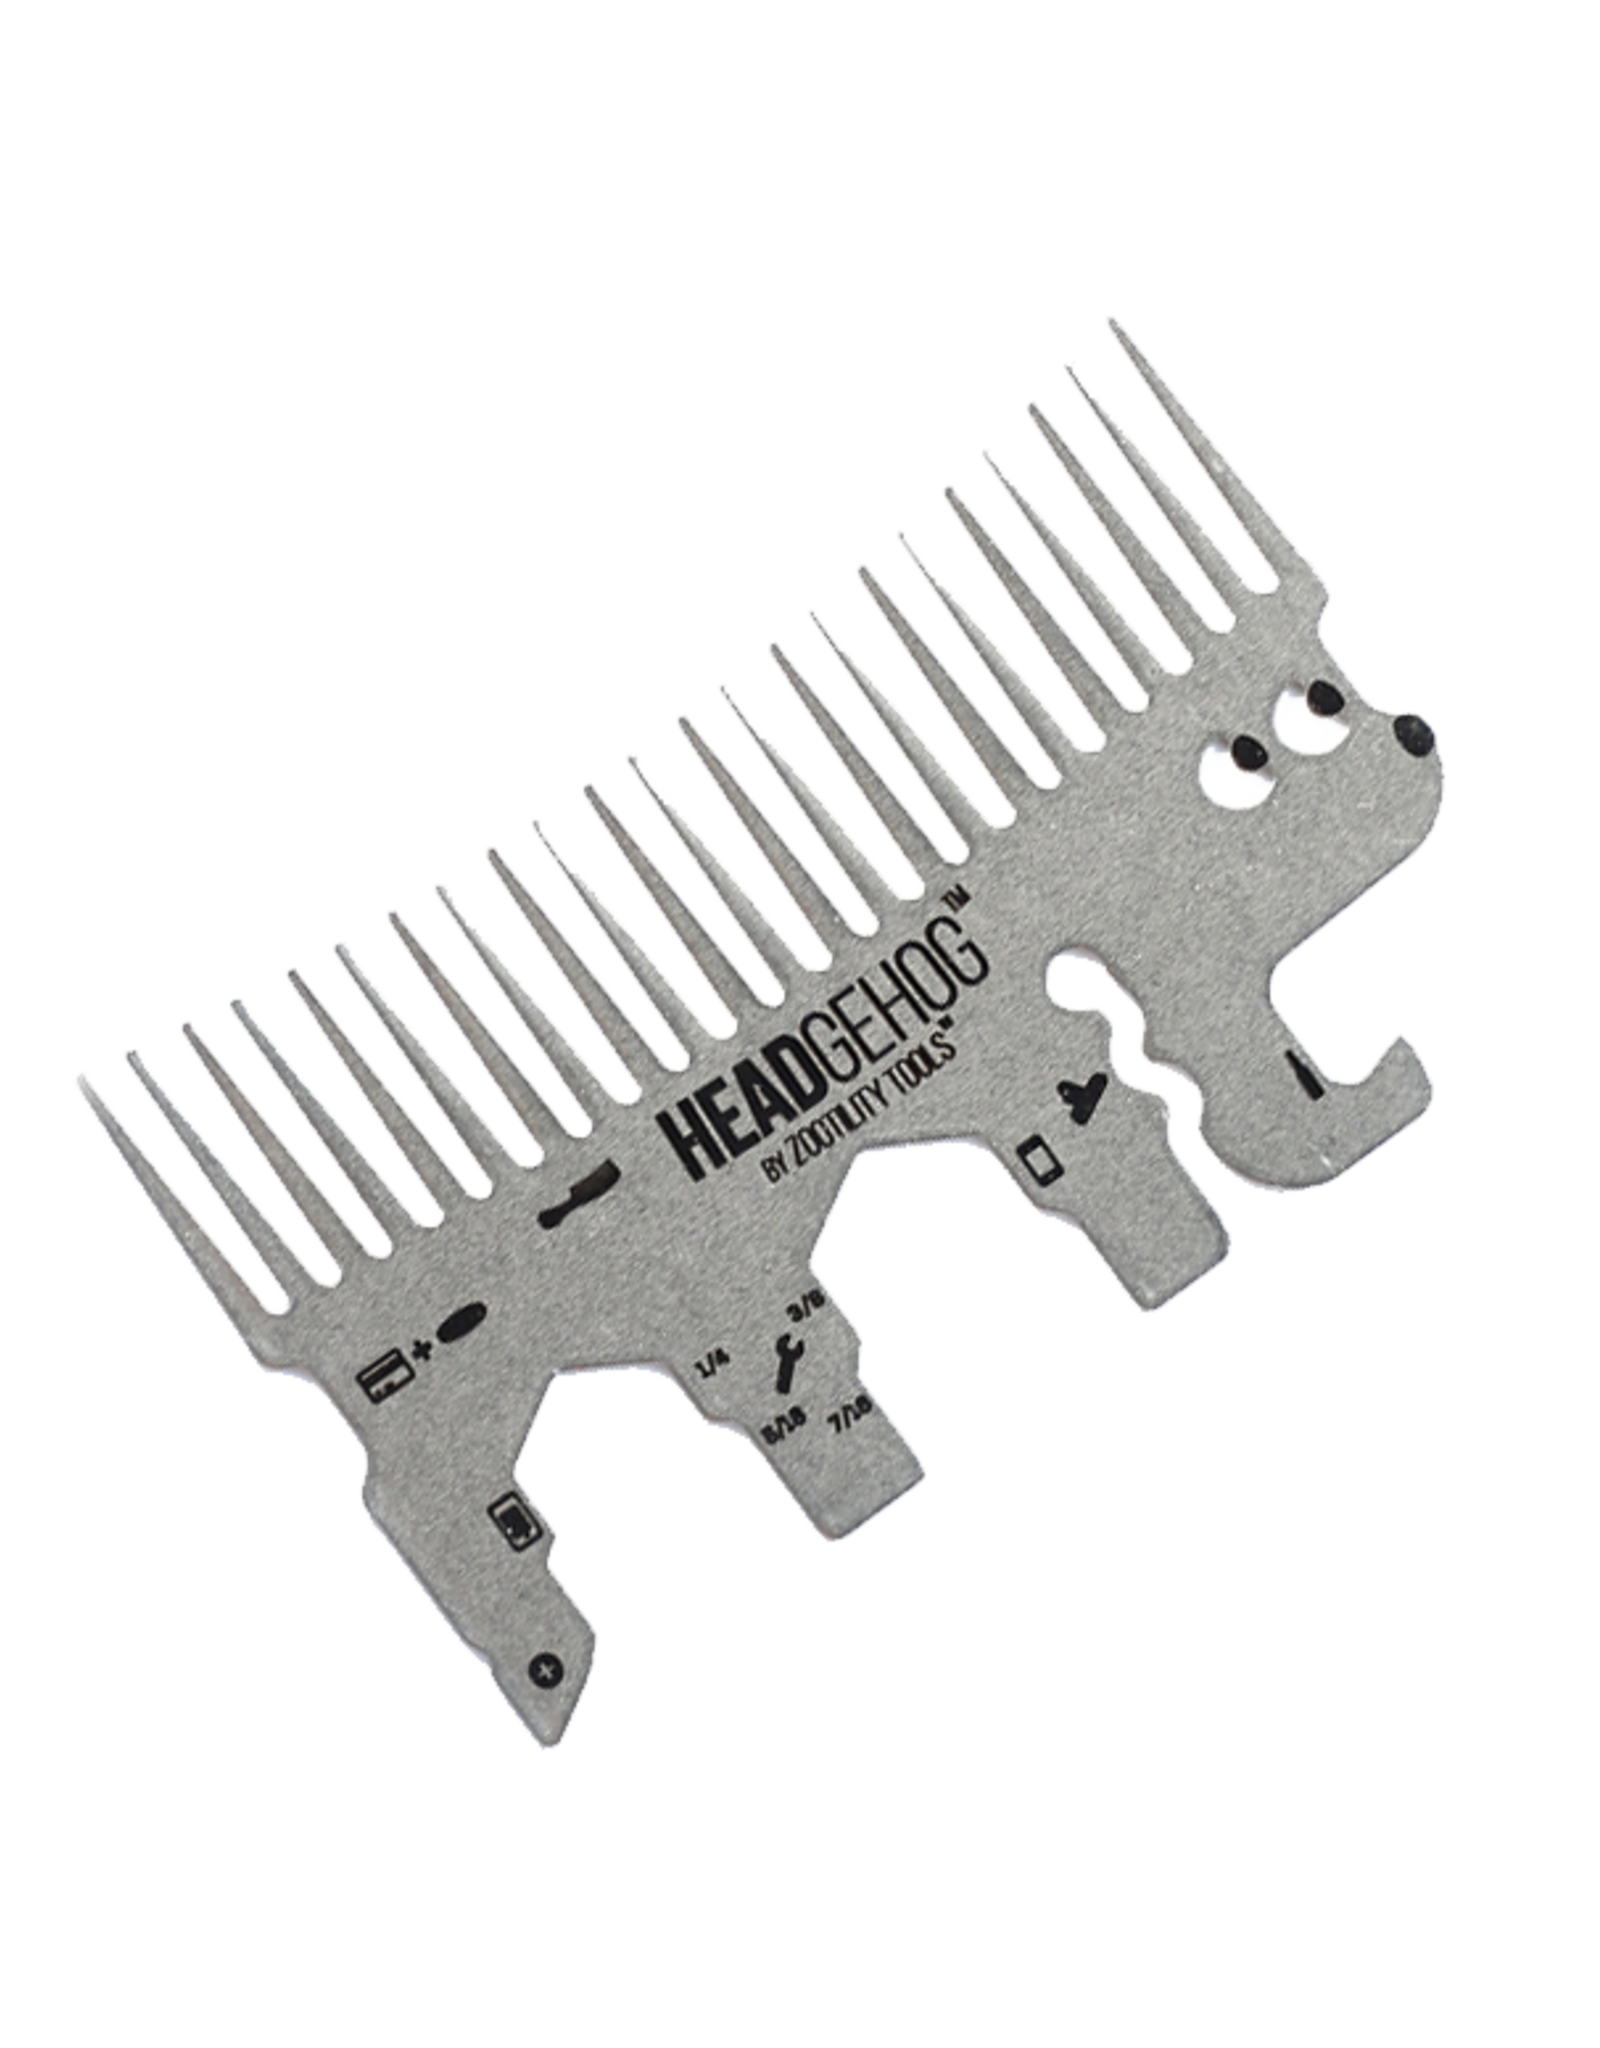 Zootility Tools Headgehog Wallet Comb/Tool